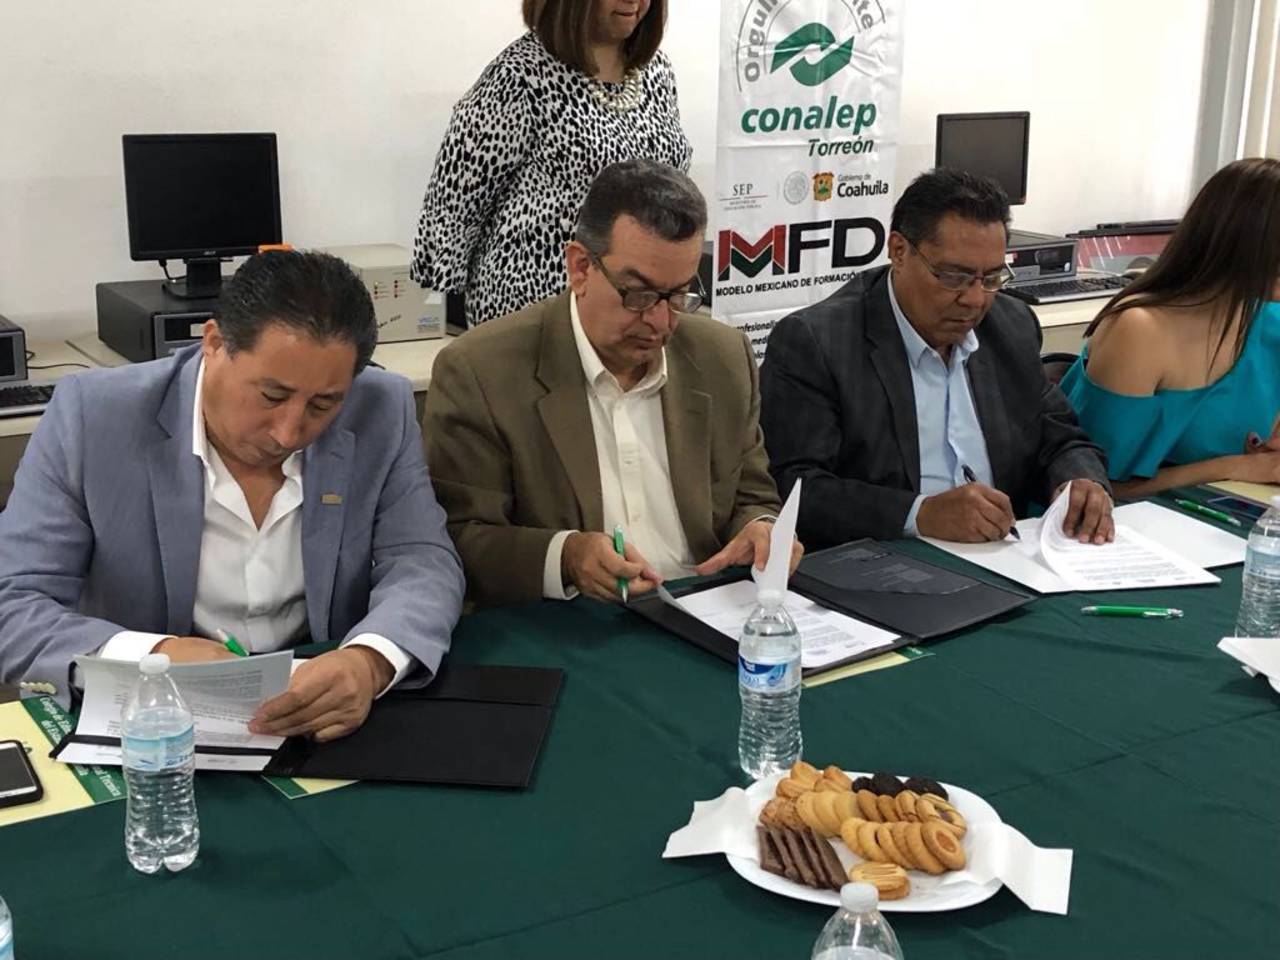 Impulso. El nuevo modelo de educación dual ha sido impulsado por el Conalep en Torreón. (EL SIGLO DE TORREÓN)